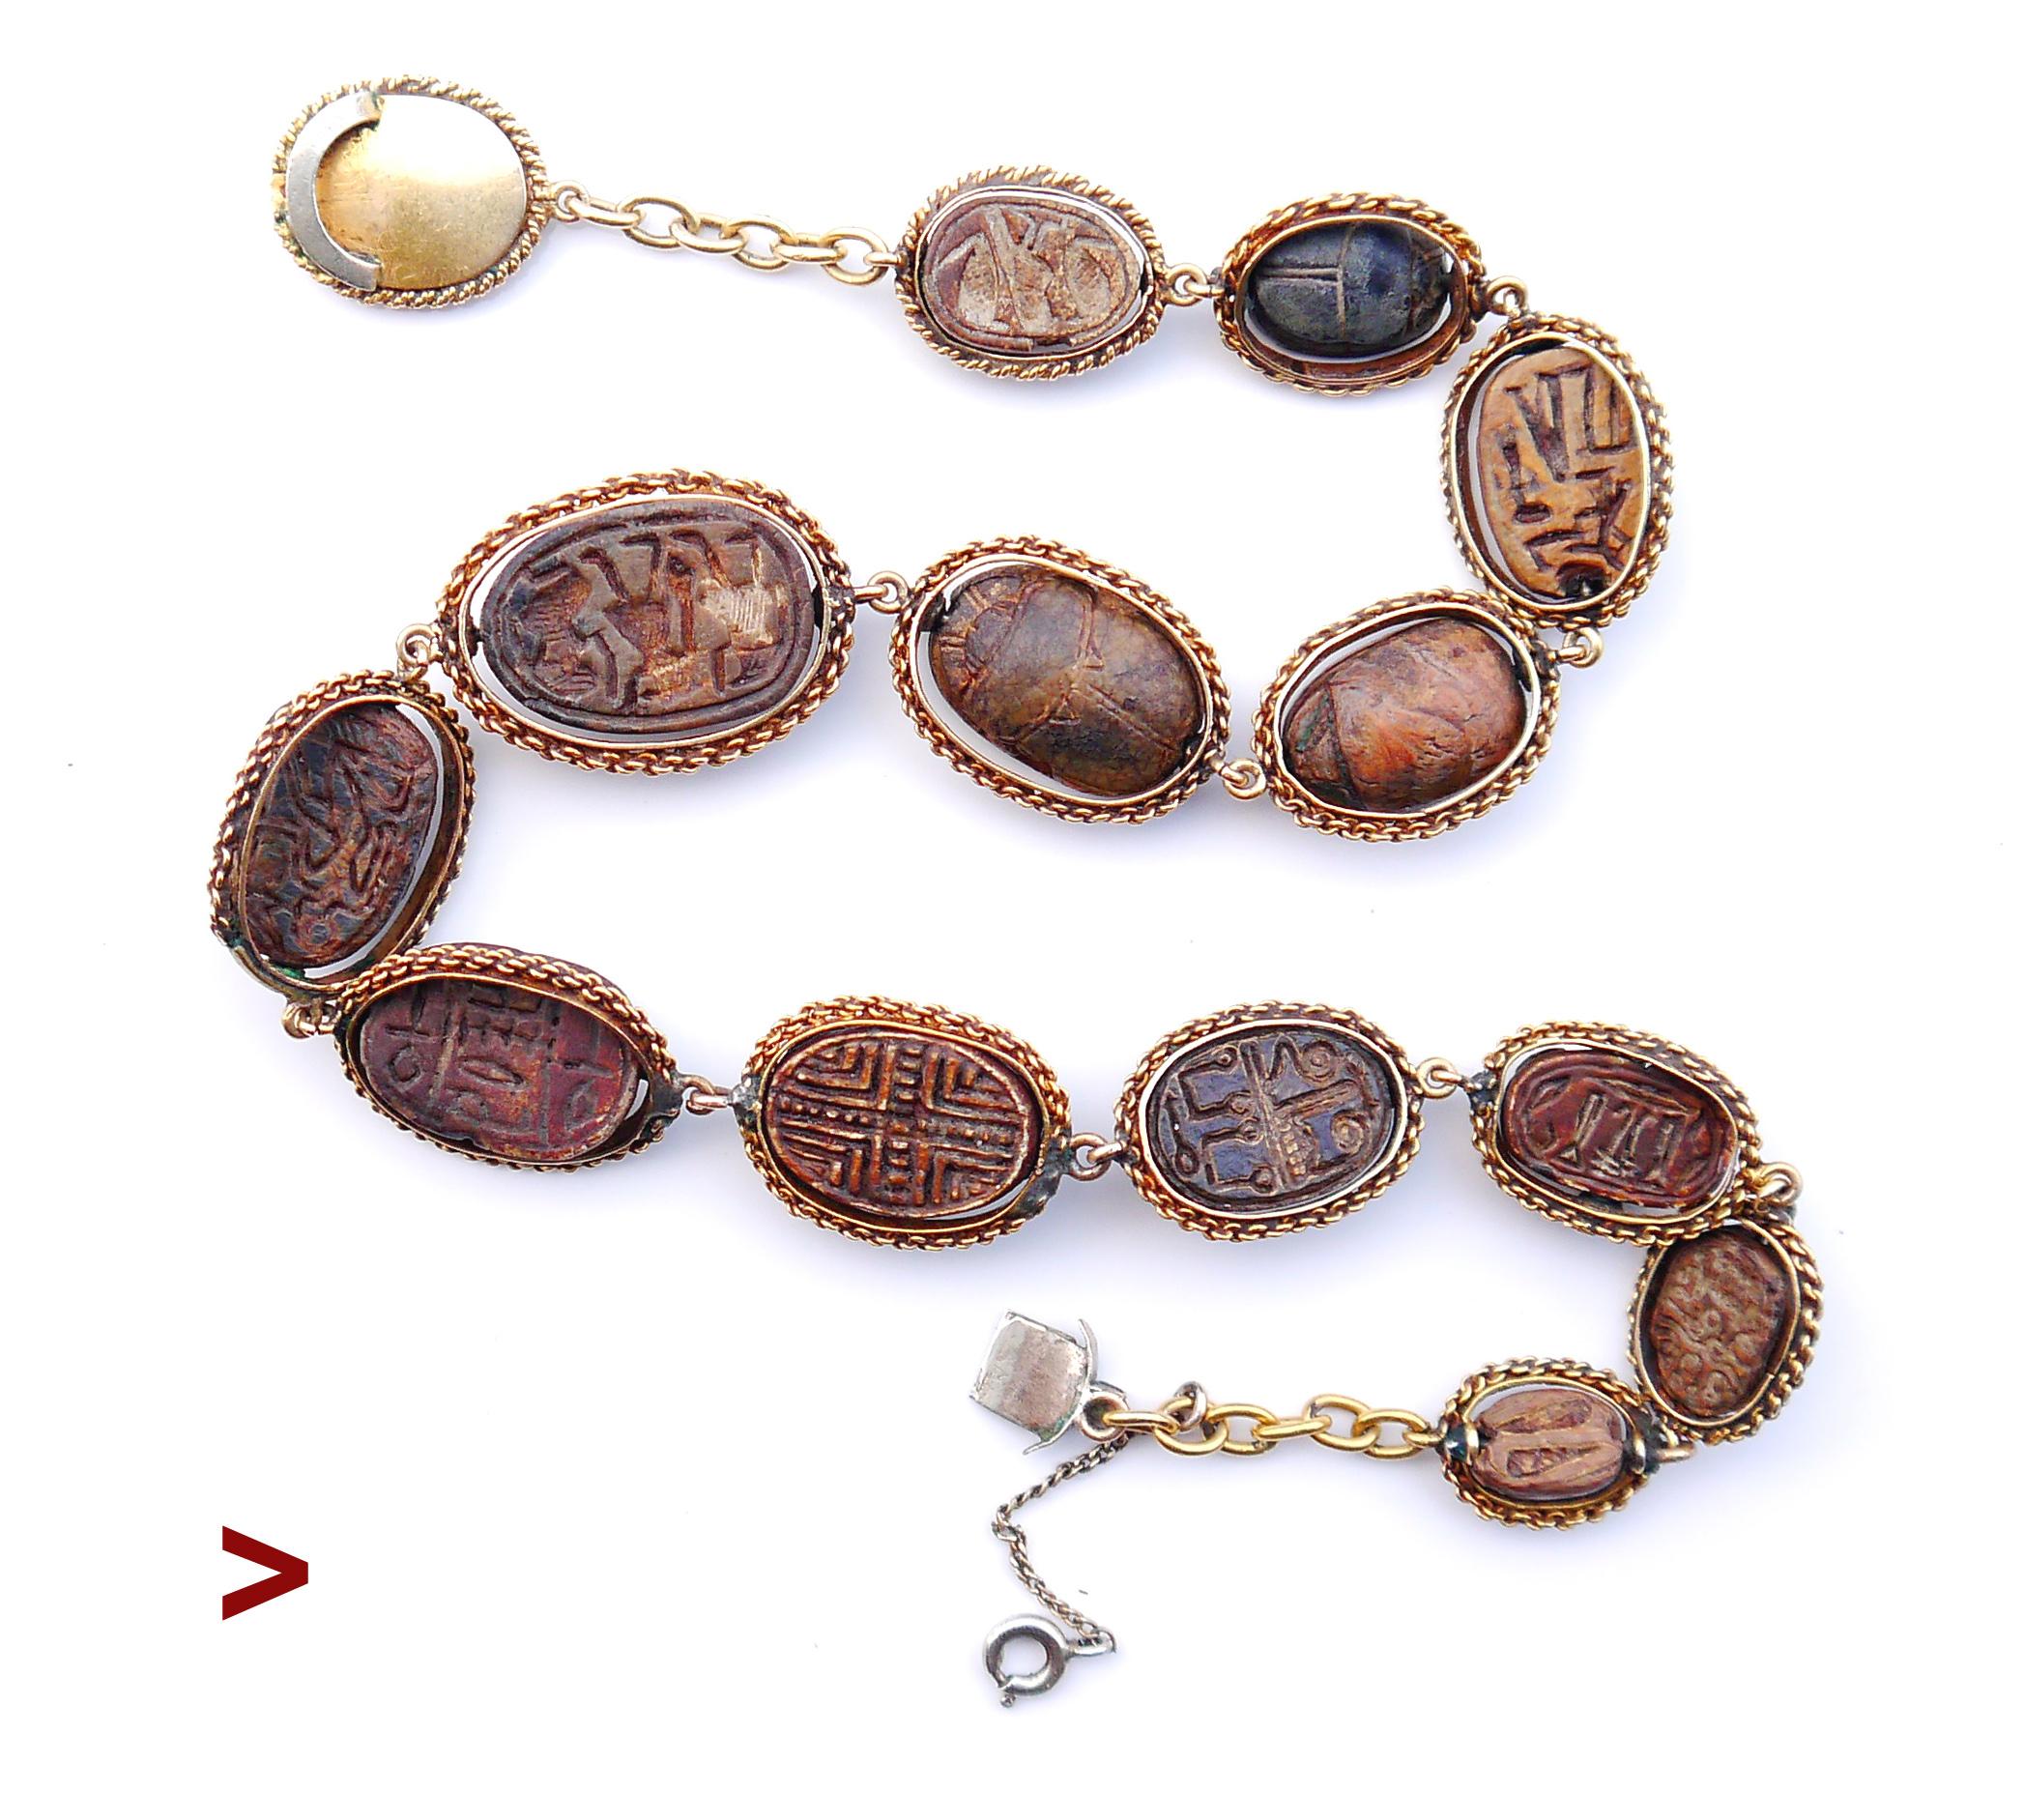 Il s'agit d'une occasion unique d'acquérir un collier antique extrêmement rare et inhabituel, un bel exemple de bijou néo-égyptien composé de 14 authentiques scarabées en stéatite ou en pierre à savon de l'Égypte ancienne des Hyksos ou du